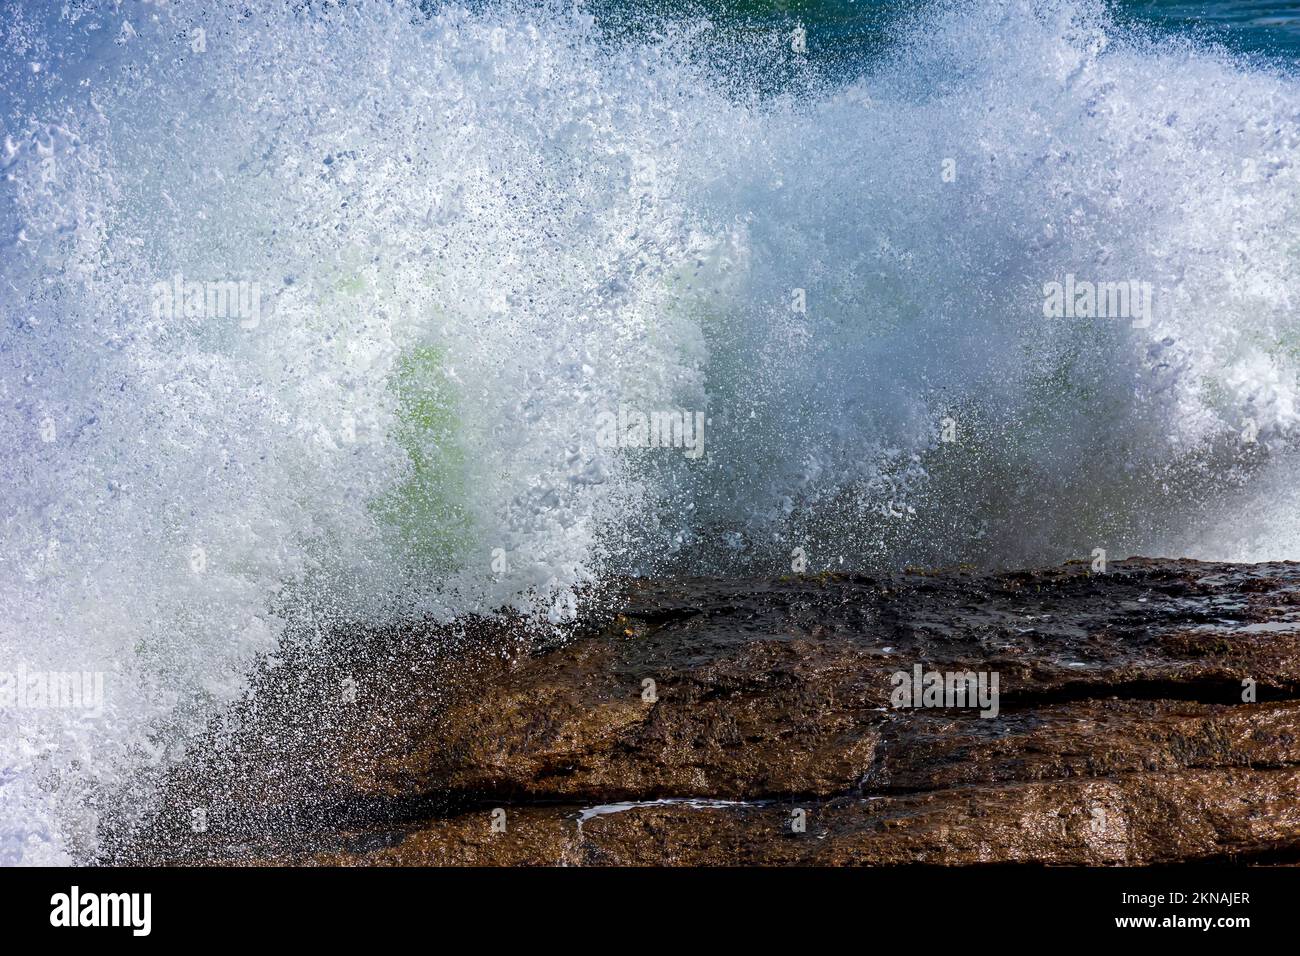 Starke Welle, die gegen die Felsen stürzt, mit Meerwasser und Schaum, der in die Luft spritzt Stockfoto